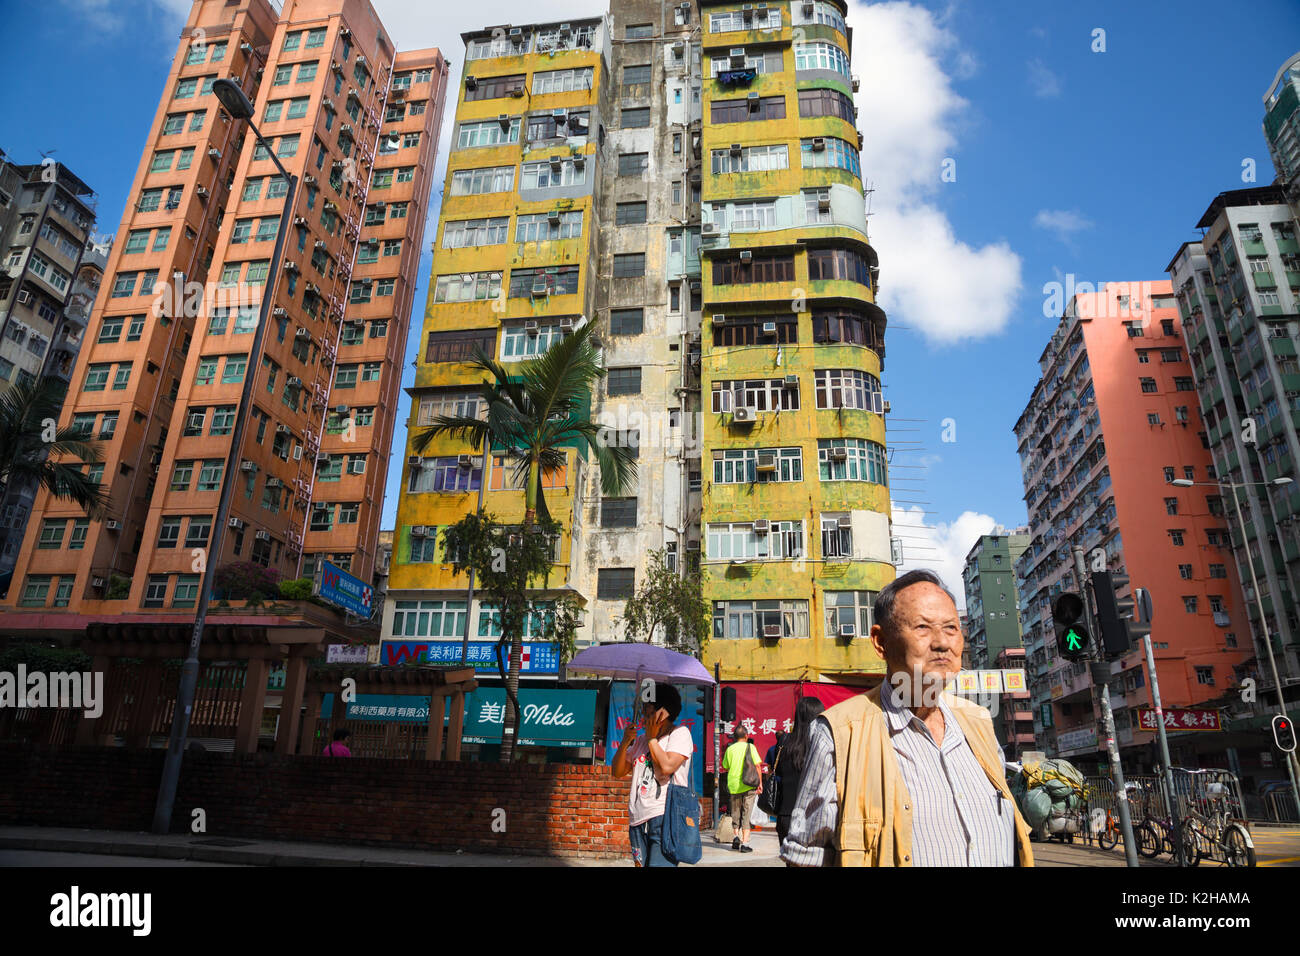 Un homme marche dans les rues de Kowloon avec bâtiments typiques, Hong Kong Banque D'Images